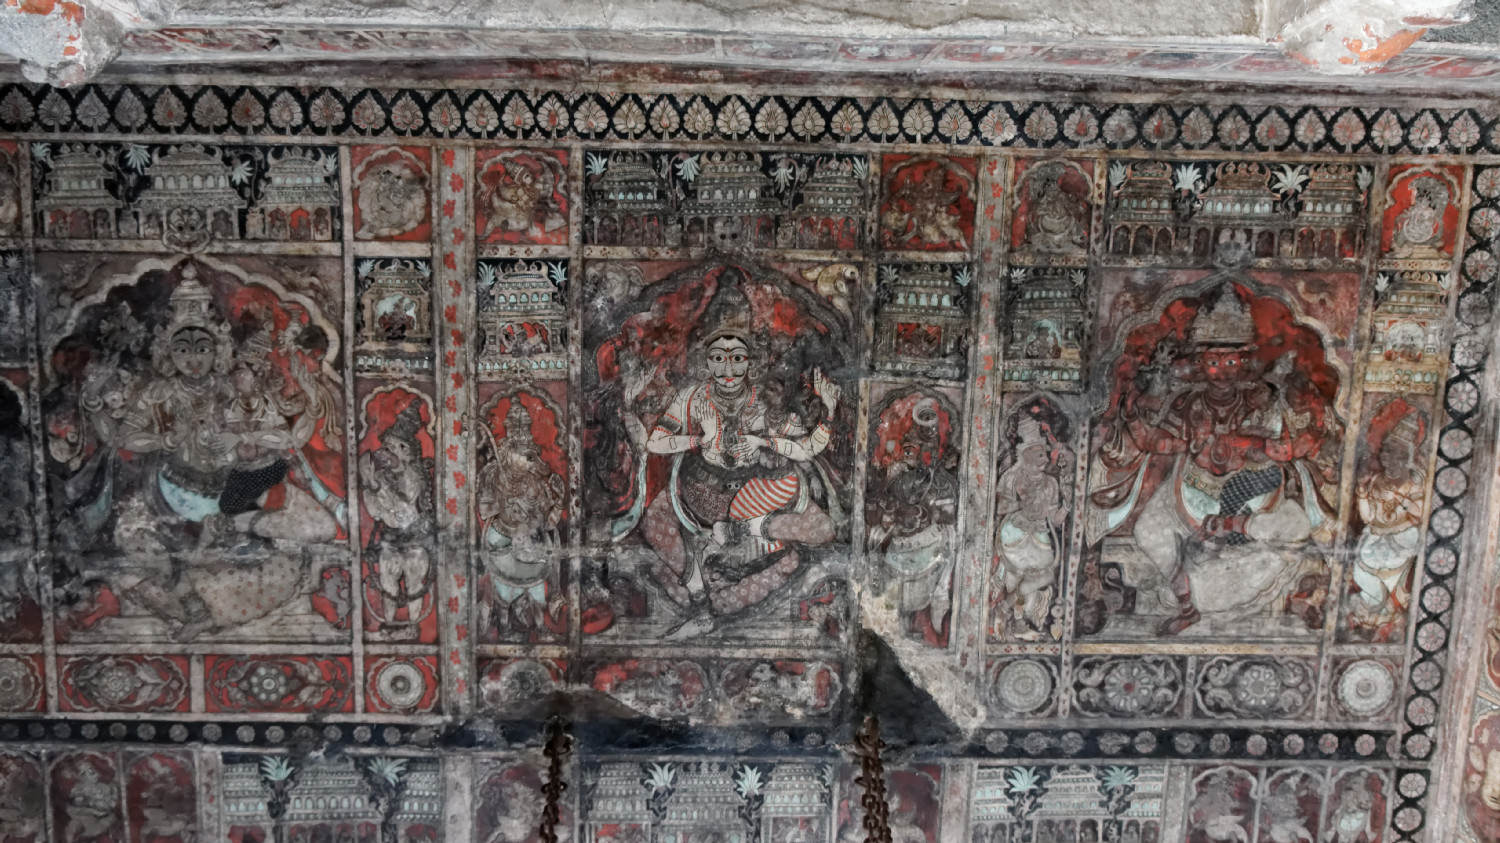 Λεπτομέρεια οροφής.
Virupaksha Temple (Pampapathi temple) 
Ηampi, Karnataka (UNESCO)